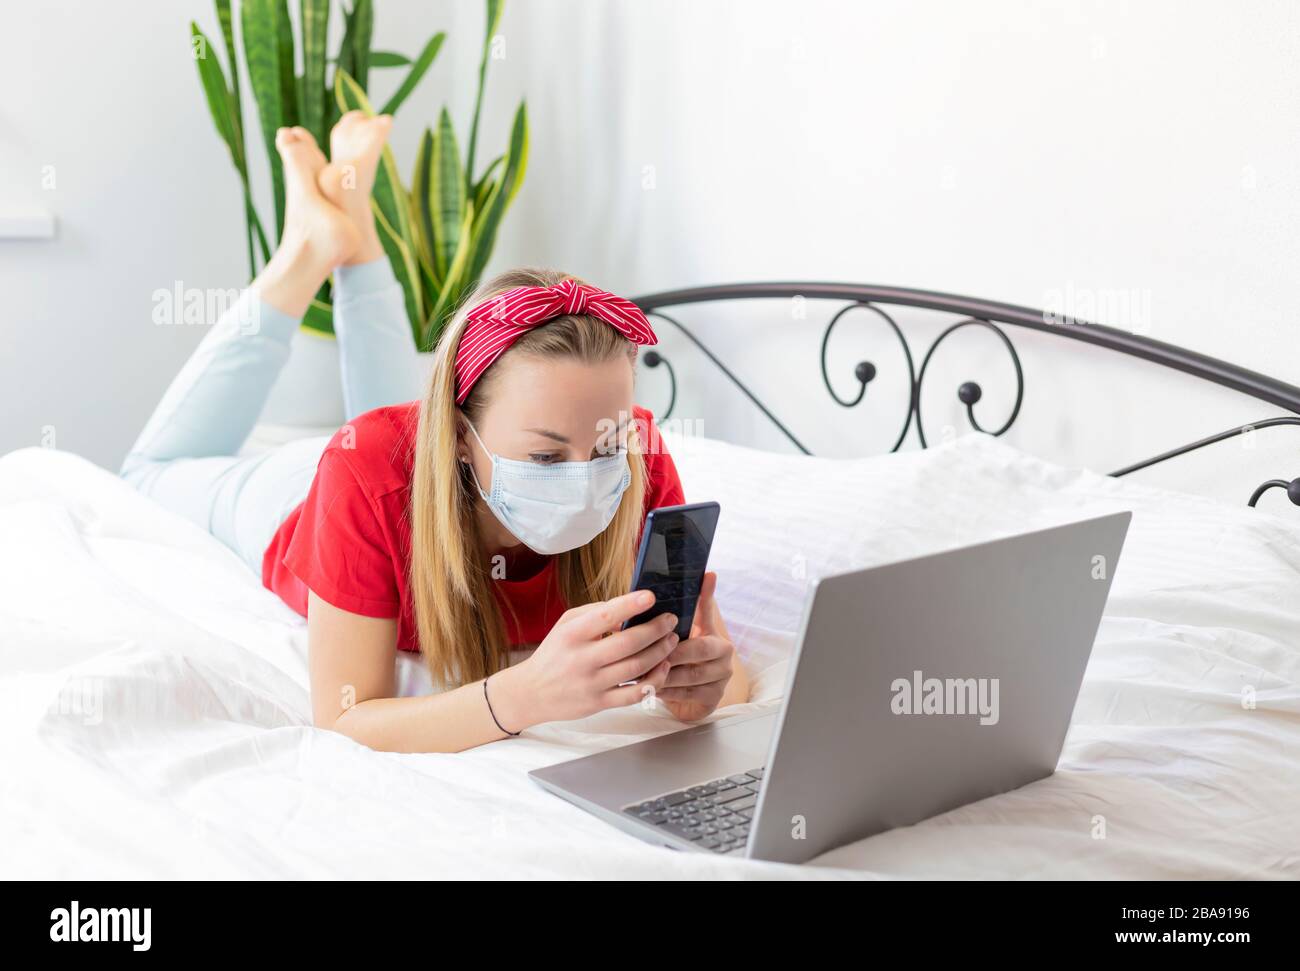 una joven enferma con una máscara médica y una camiseta roja y pantalones cómodos se encuentra en una cama blanca con un ordenador portátil y un teléfono. trabaja desde casa porque Foto de stock